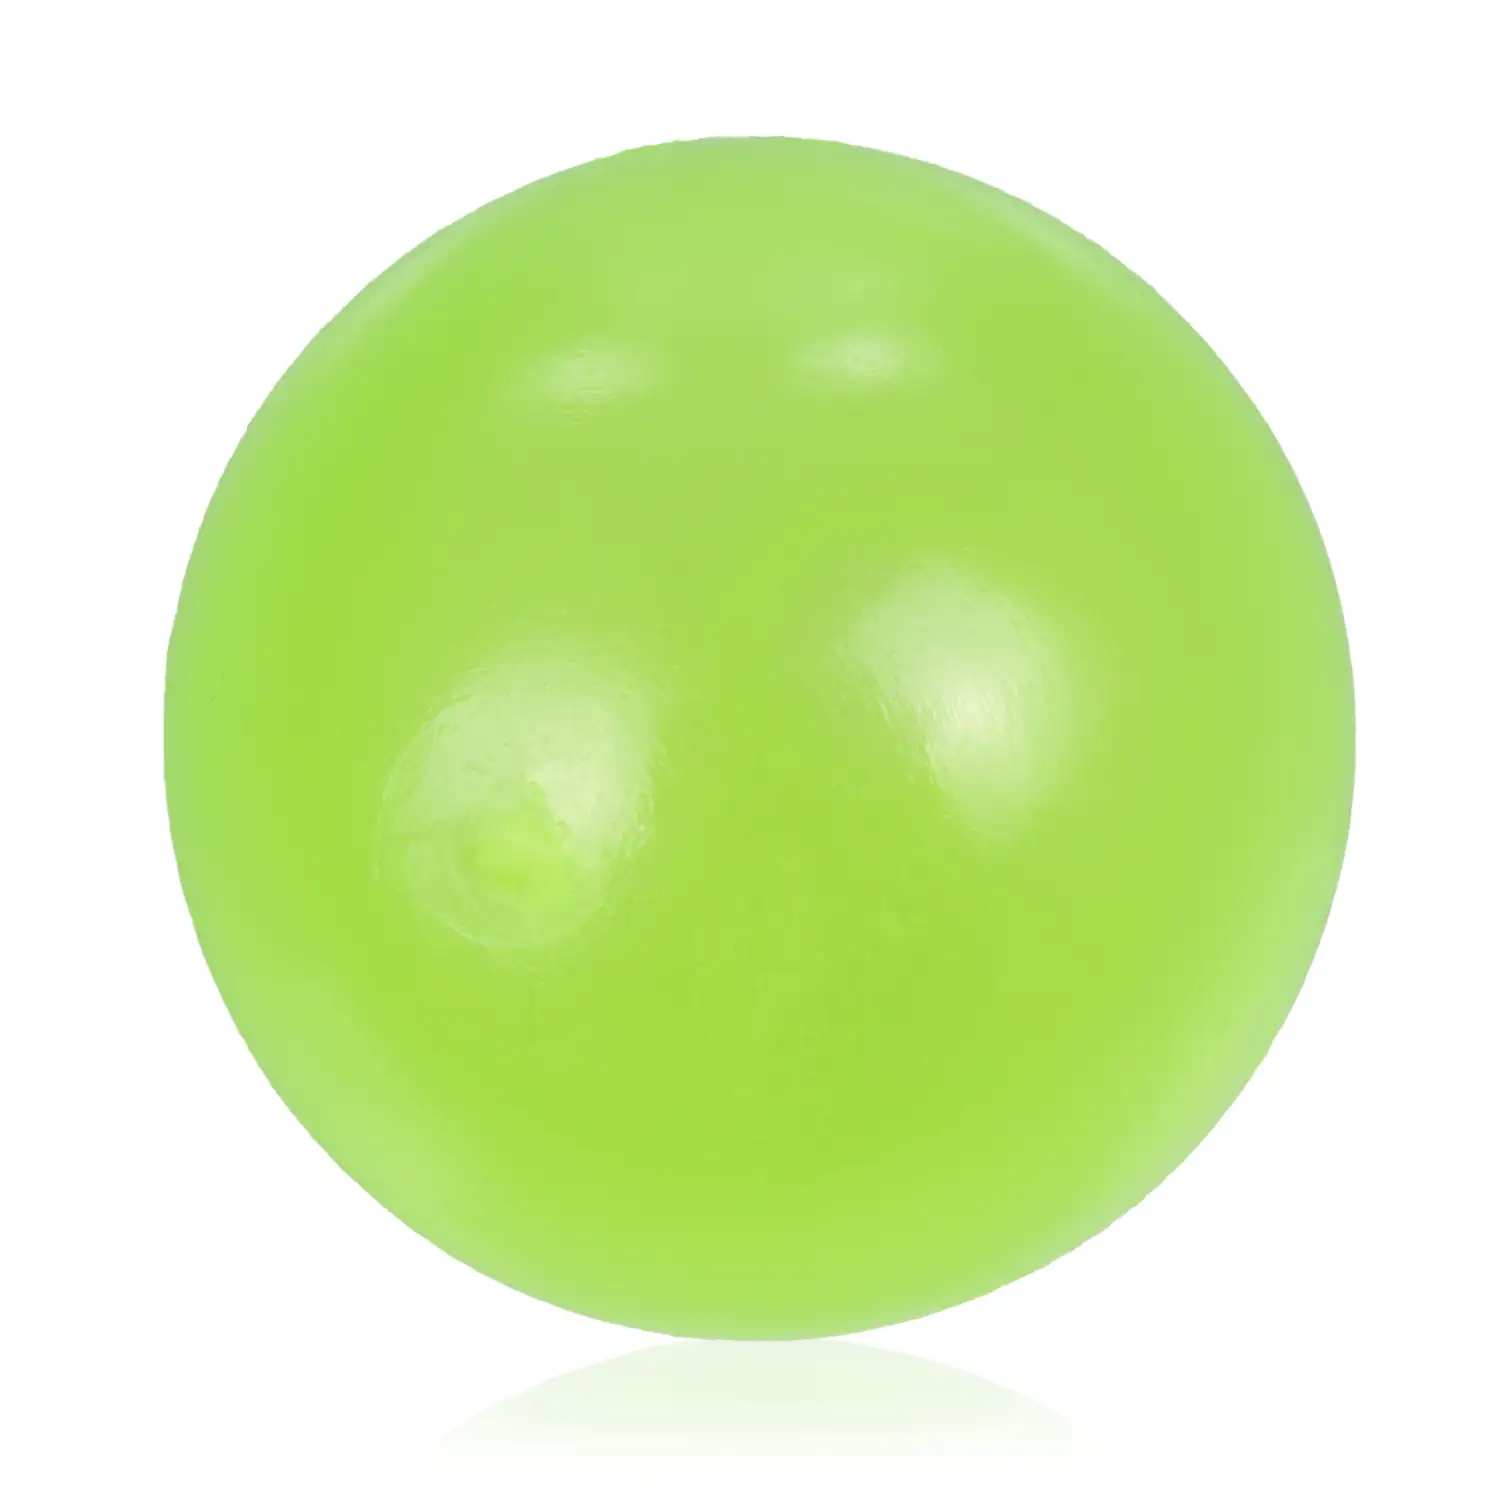 Bola de silicona antiestrés de 5,5cm, brilla en la oscuridad. Bola blanda para apretar y estrujar. Pegajosa, se pega en techo y paredes durante unos segundos.